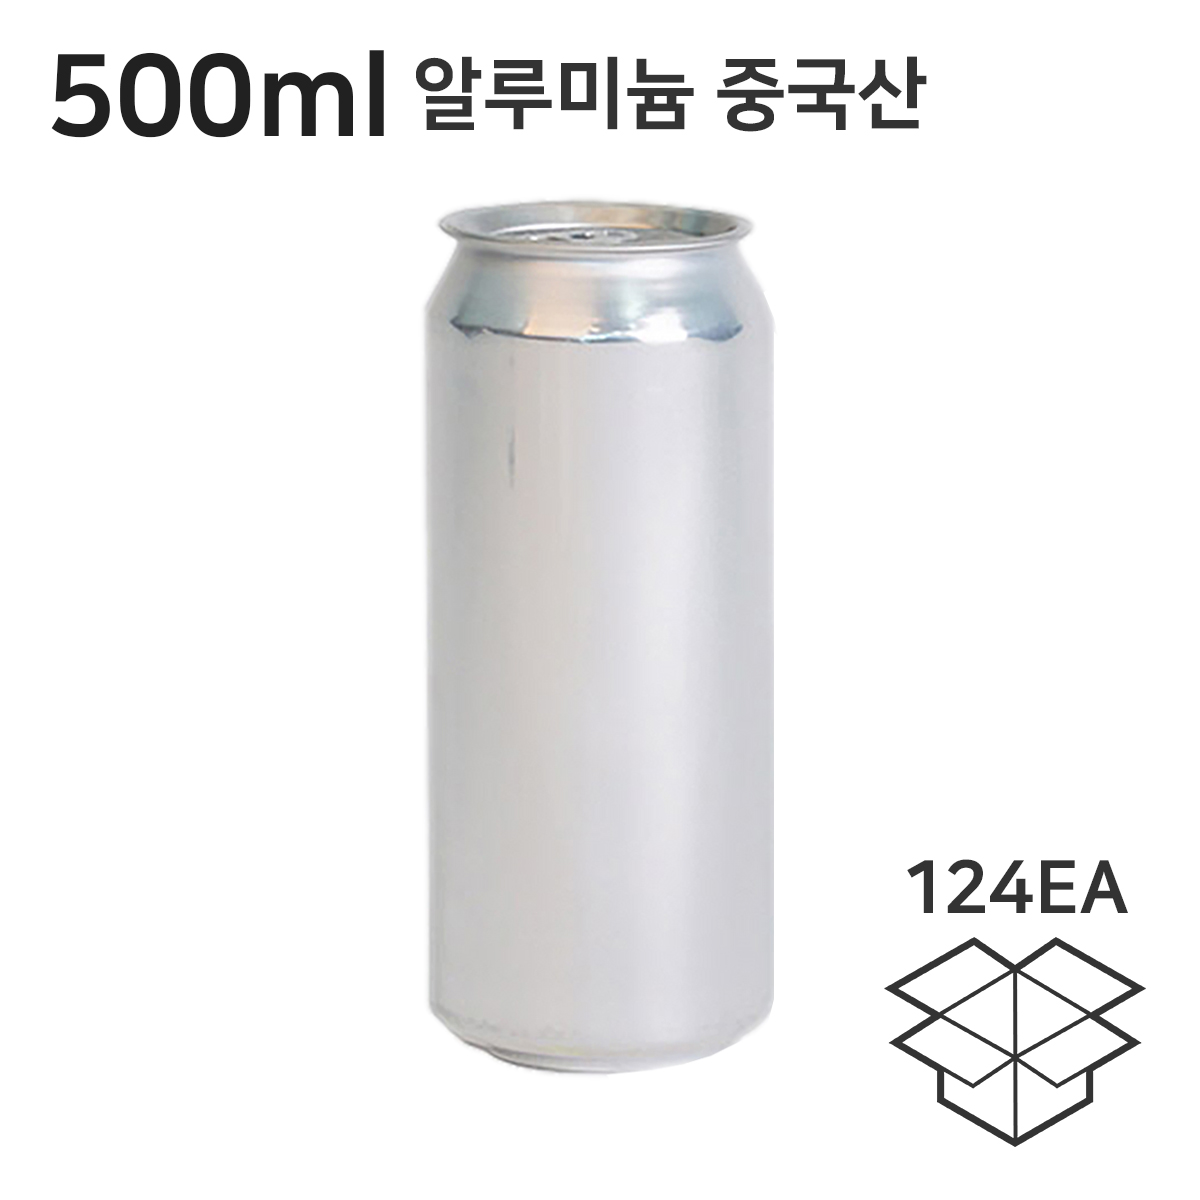 중국 알루미늄캔 500ml 1박스 124개입 일반형뚜껑 캔시머전용 캔시머캔 공캔 뚜껑포함